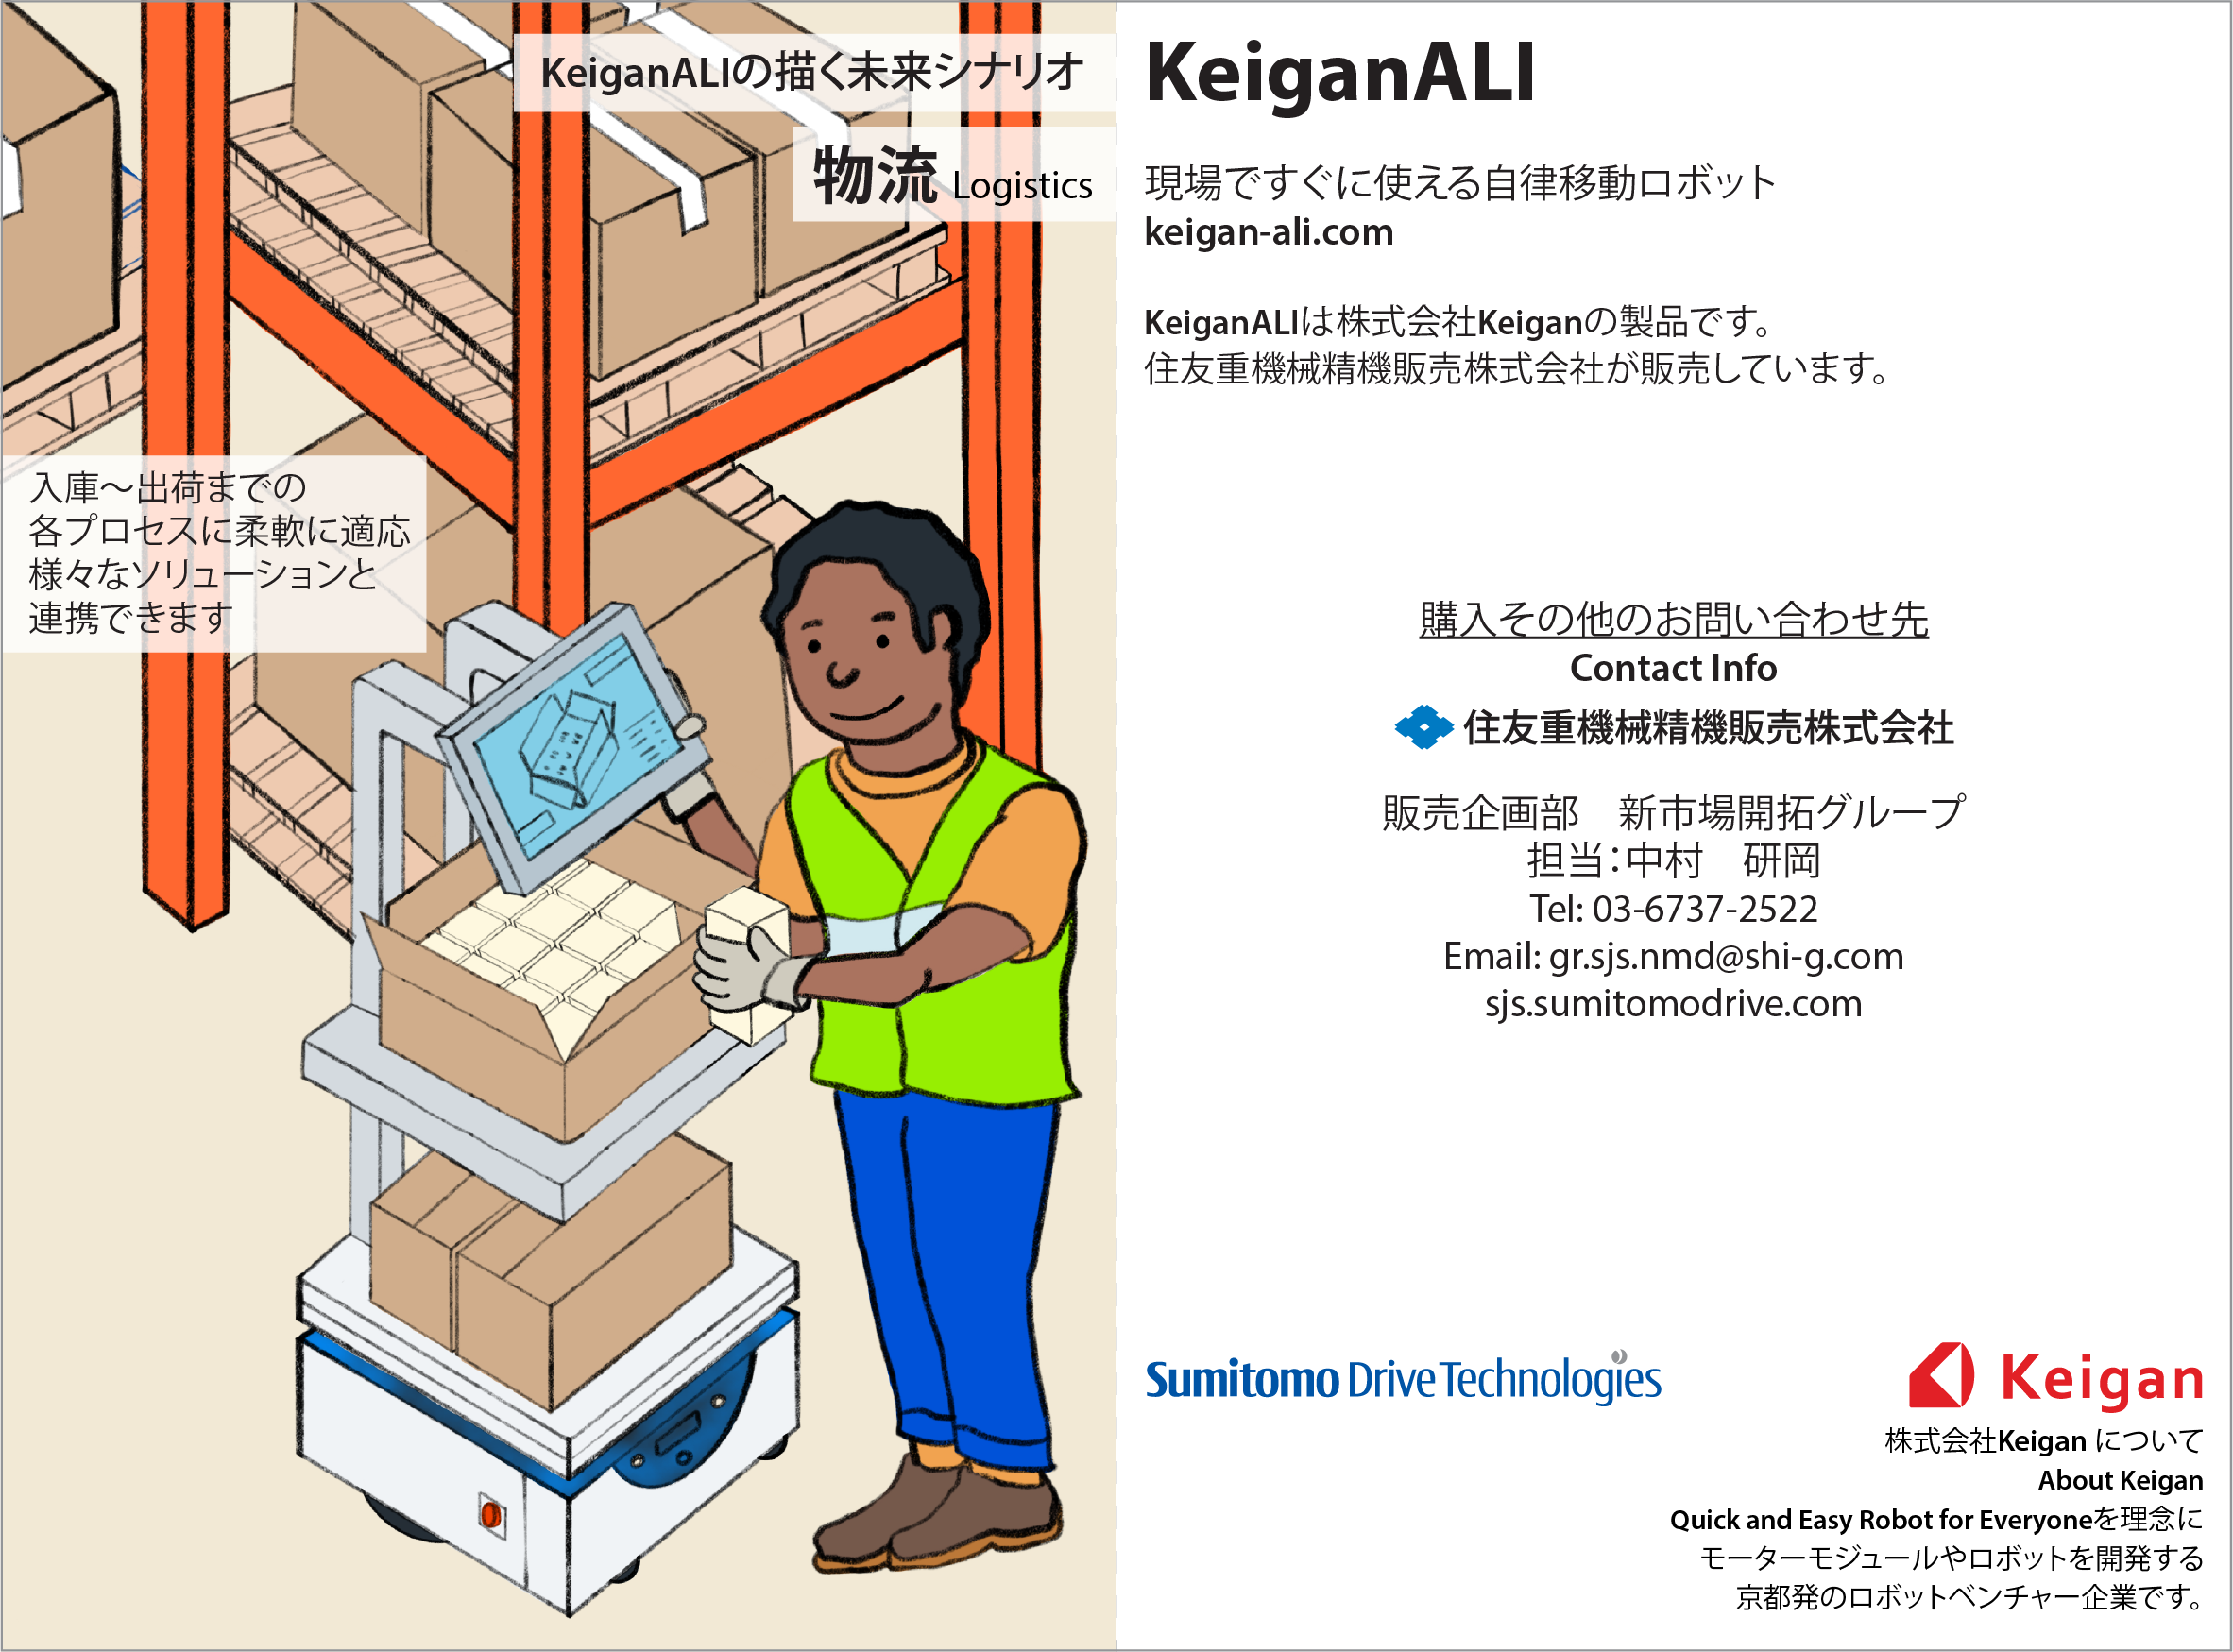 Keigan_Ali_Postcards-Logistics.png